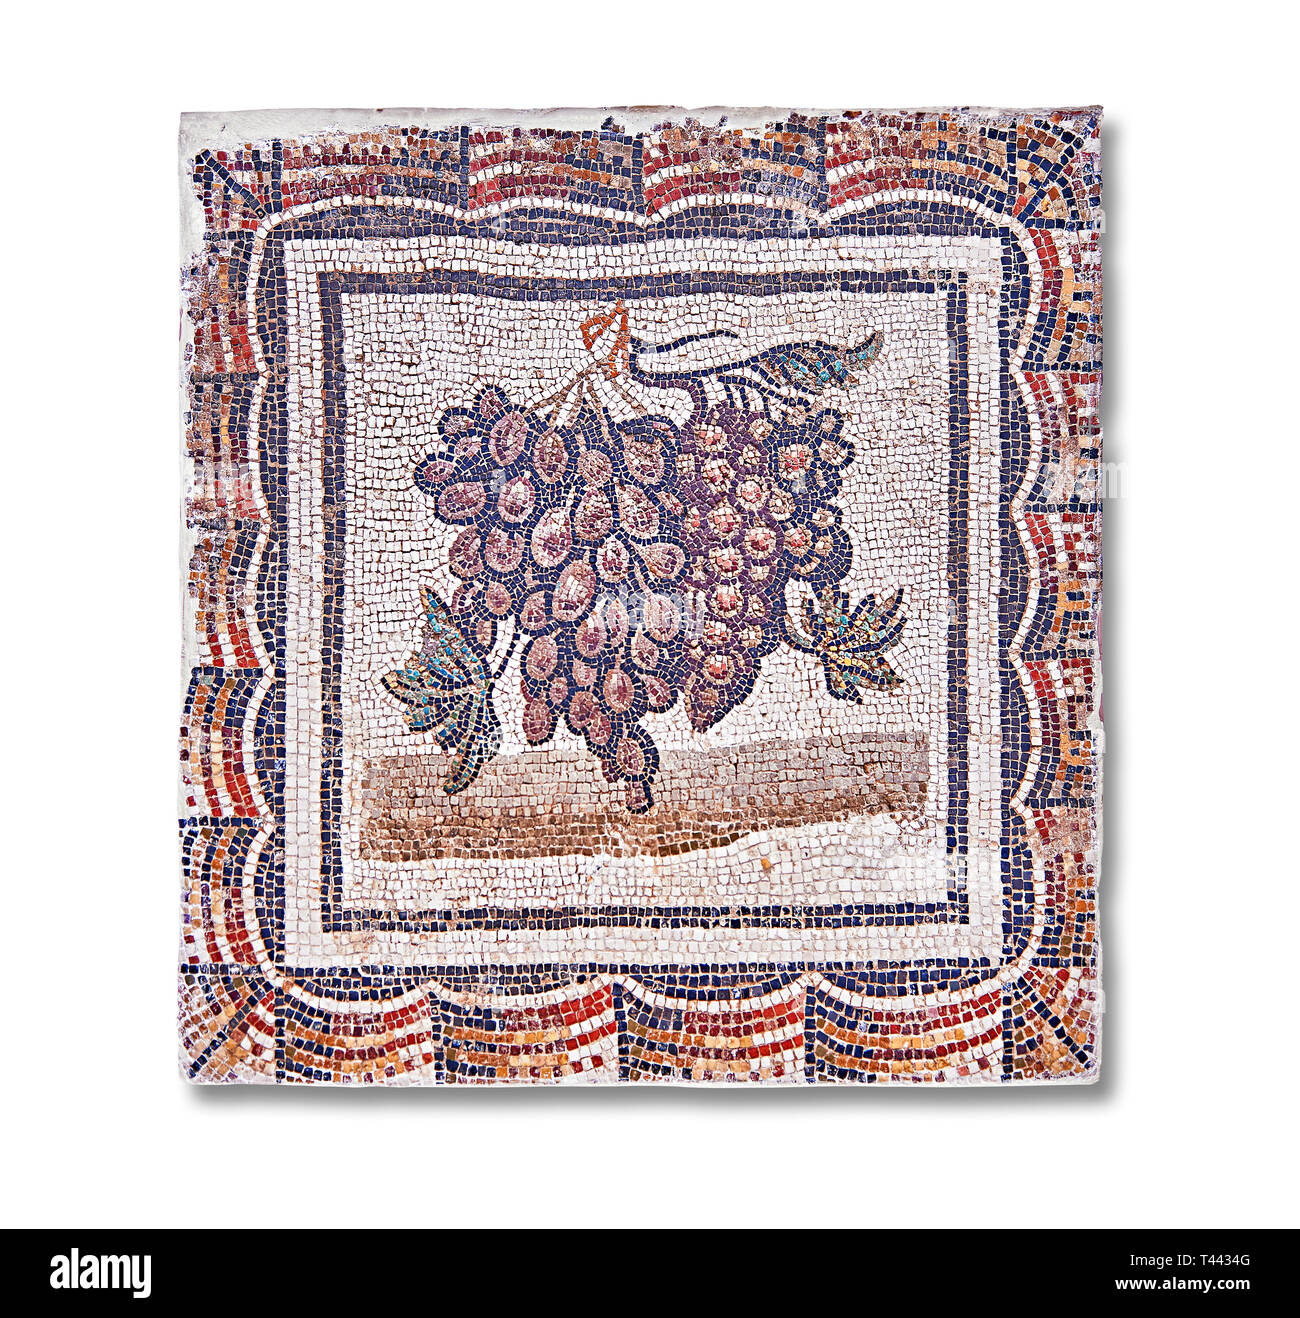 Iii secolo mosaico romano del pannello nero e uva bianca. Da Thysdrus (El Jem), Tunisia. Il Museo di Bardo, Tunisi, Tunisia. Foto Stock